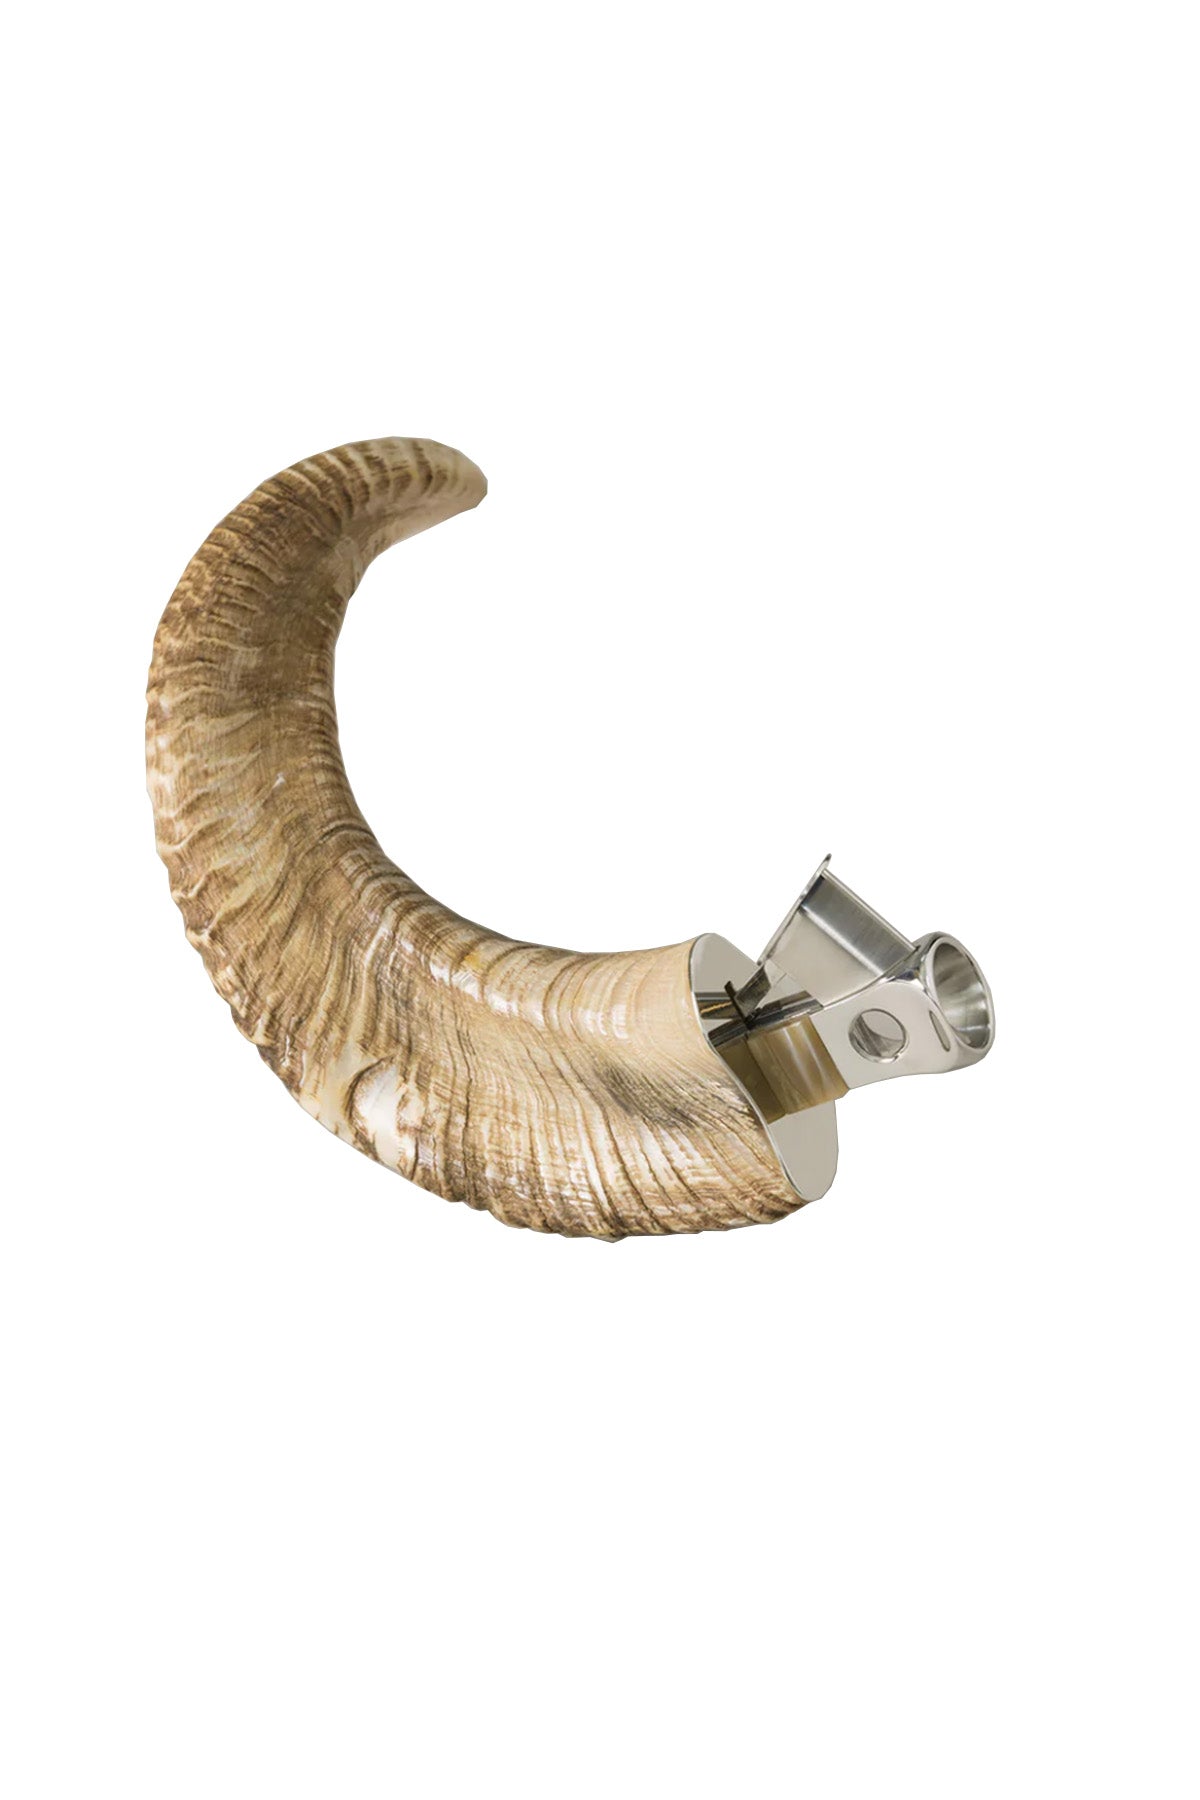 Cigar V-Cutter - Ram Horn